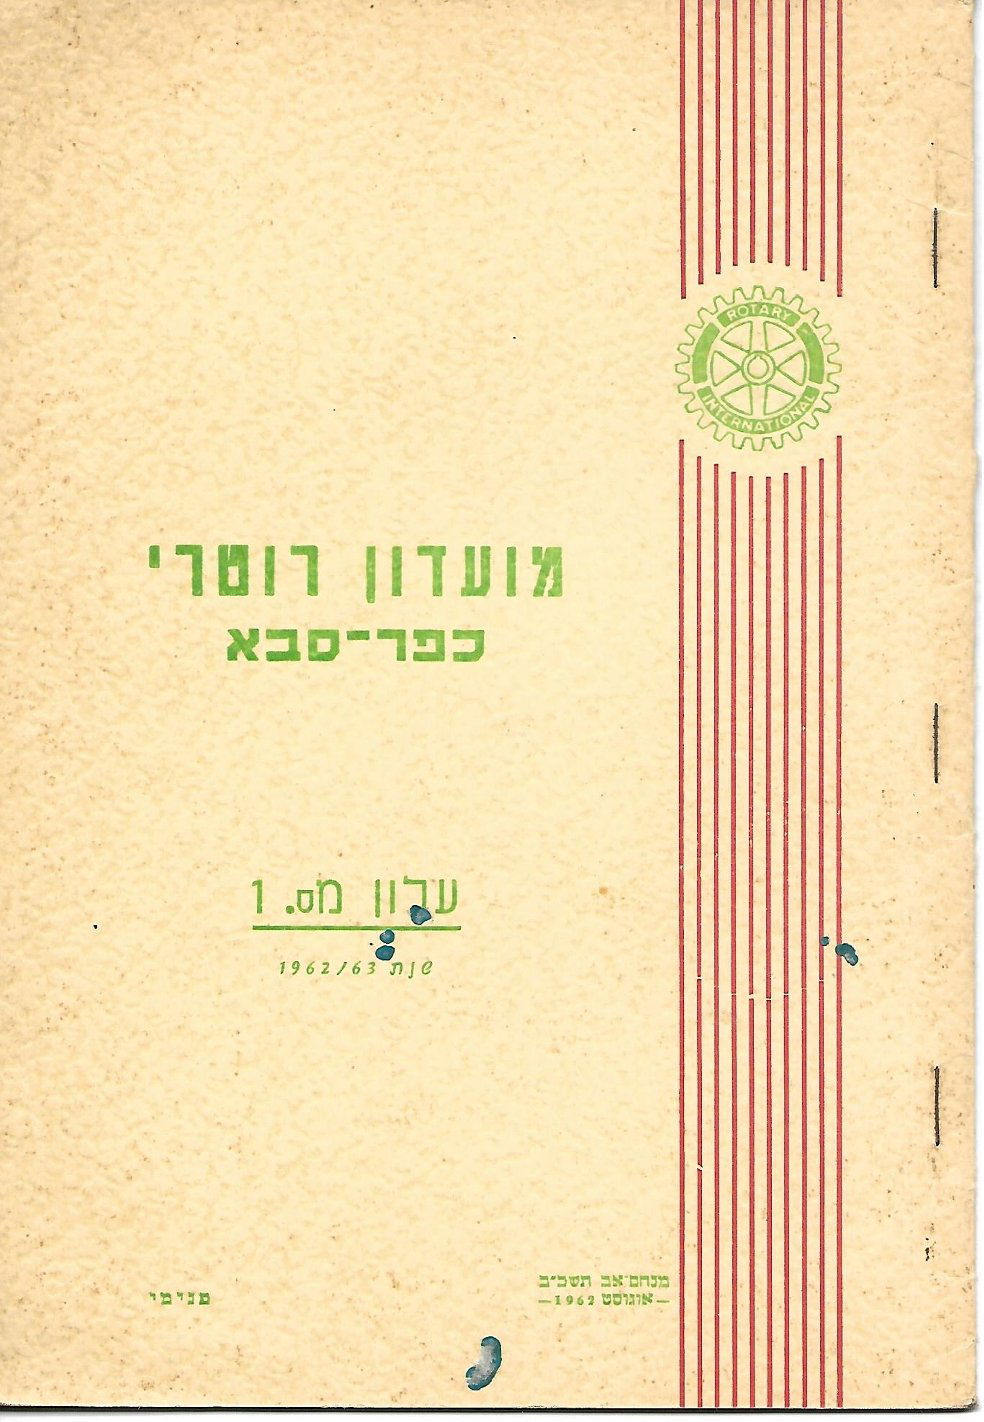 עלון מס' 1 שנת 1962/63 - נשיא ד"ר אלפרד גרינבאום